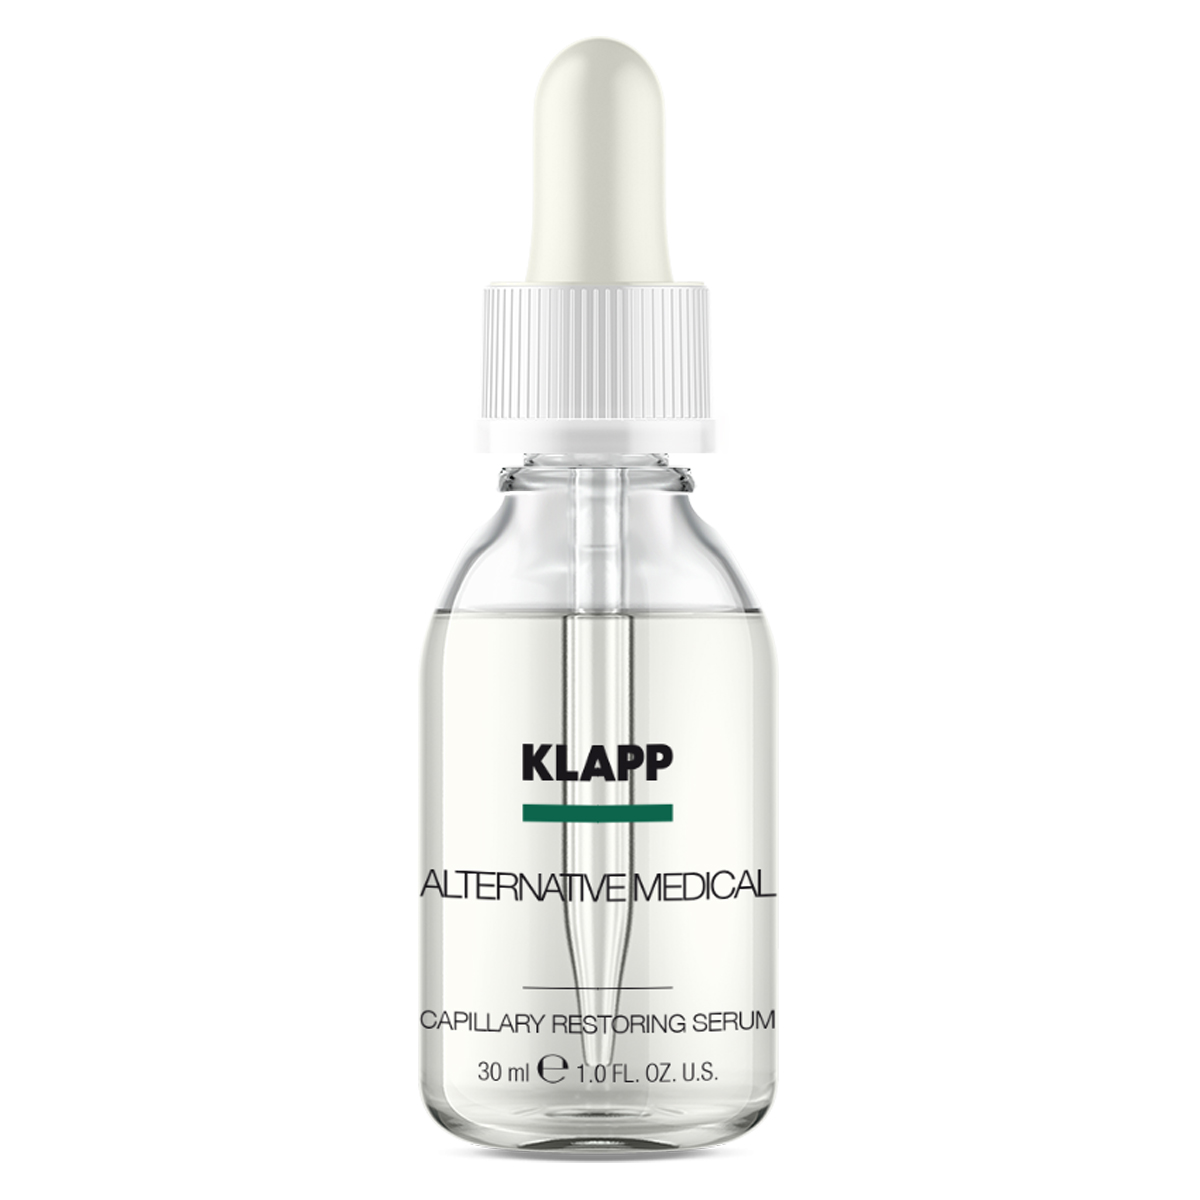 KLAPP Alternative Medical Capillary Restoring Serum 30 ml